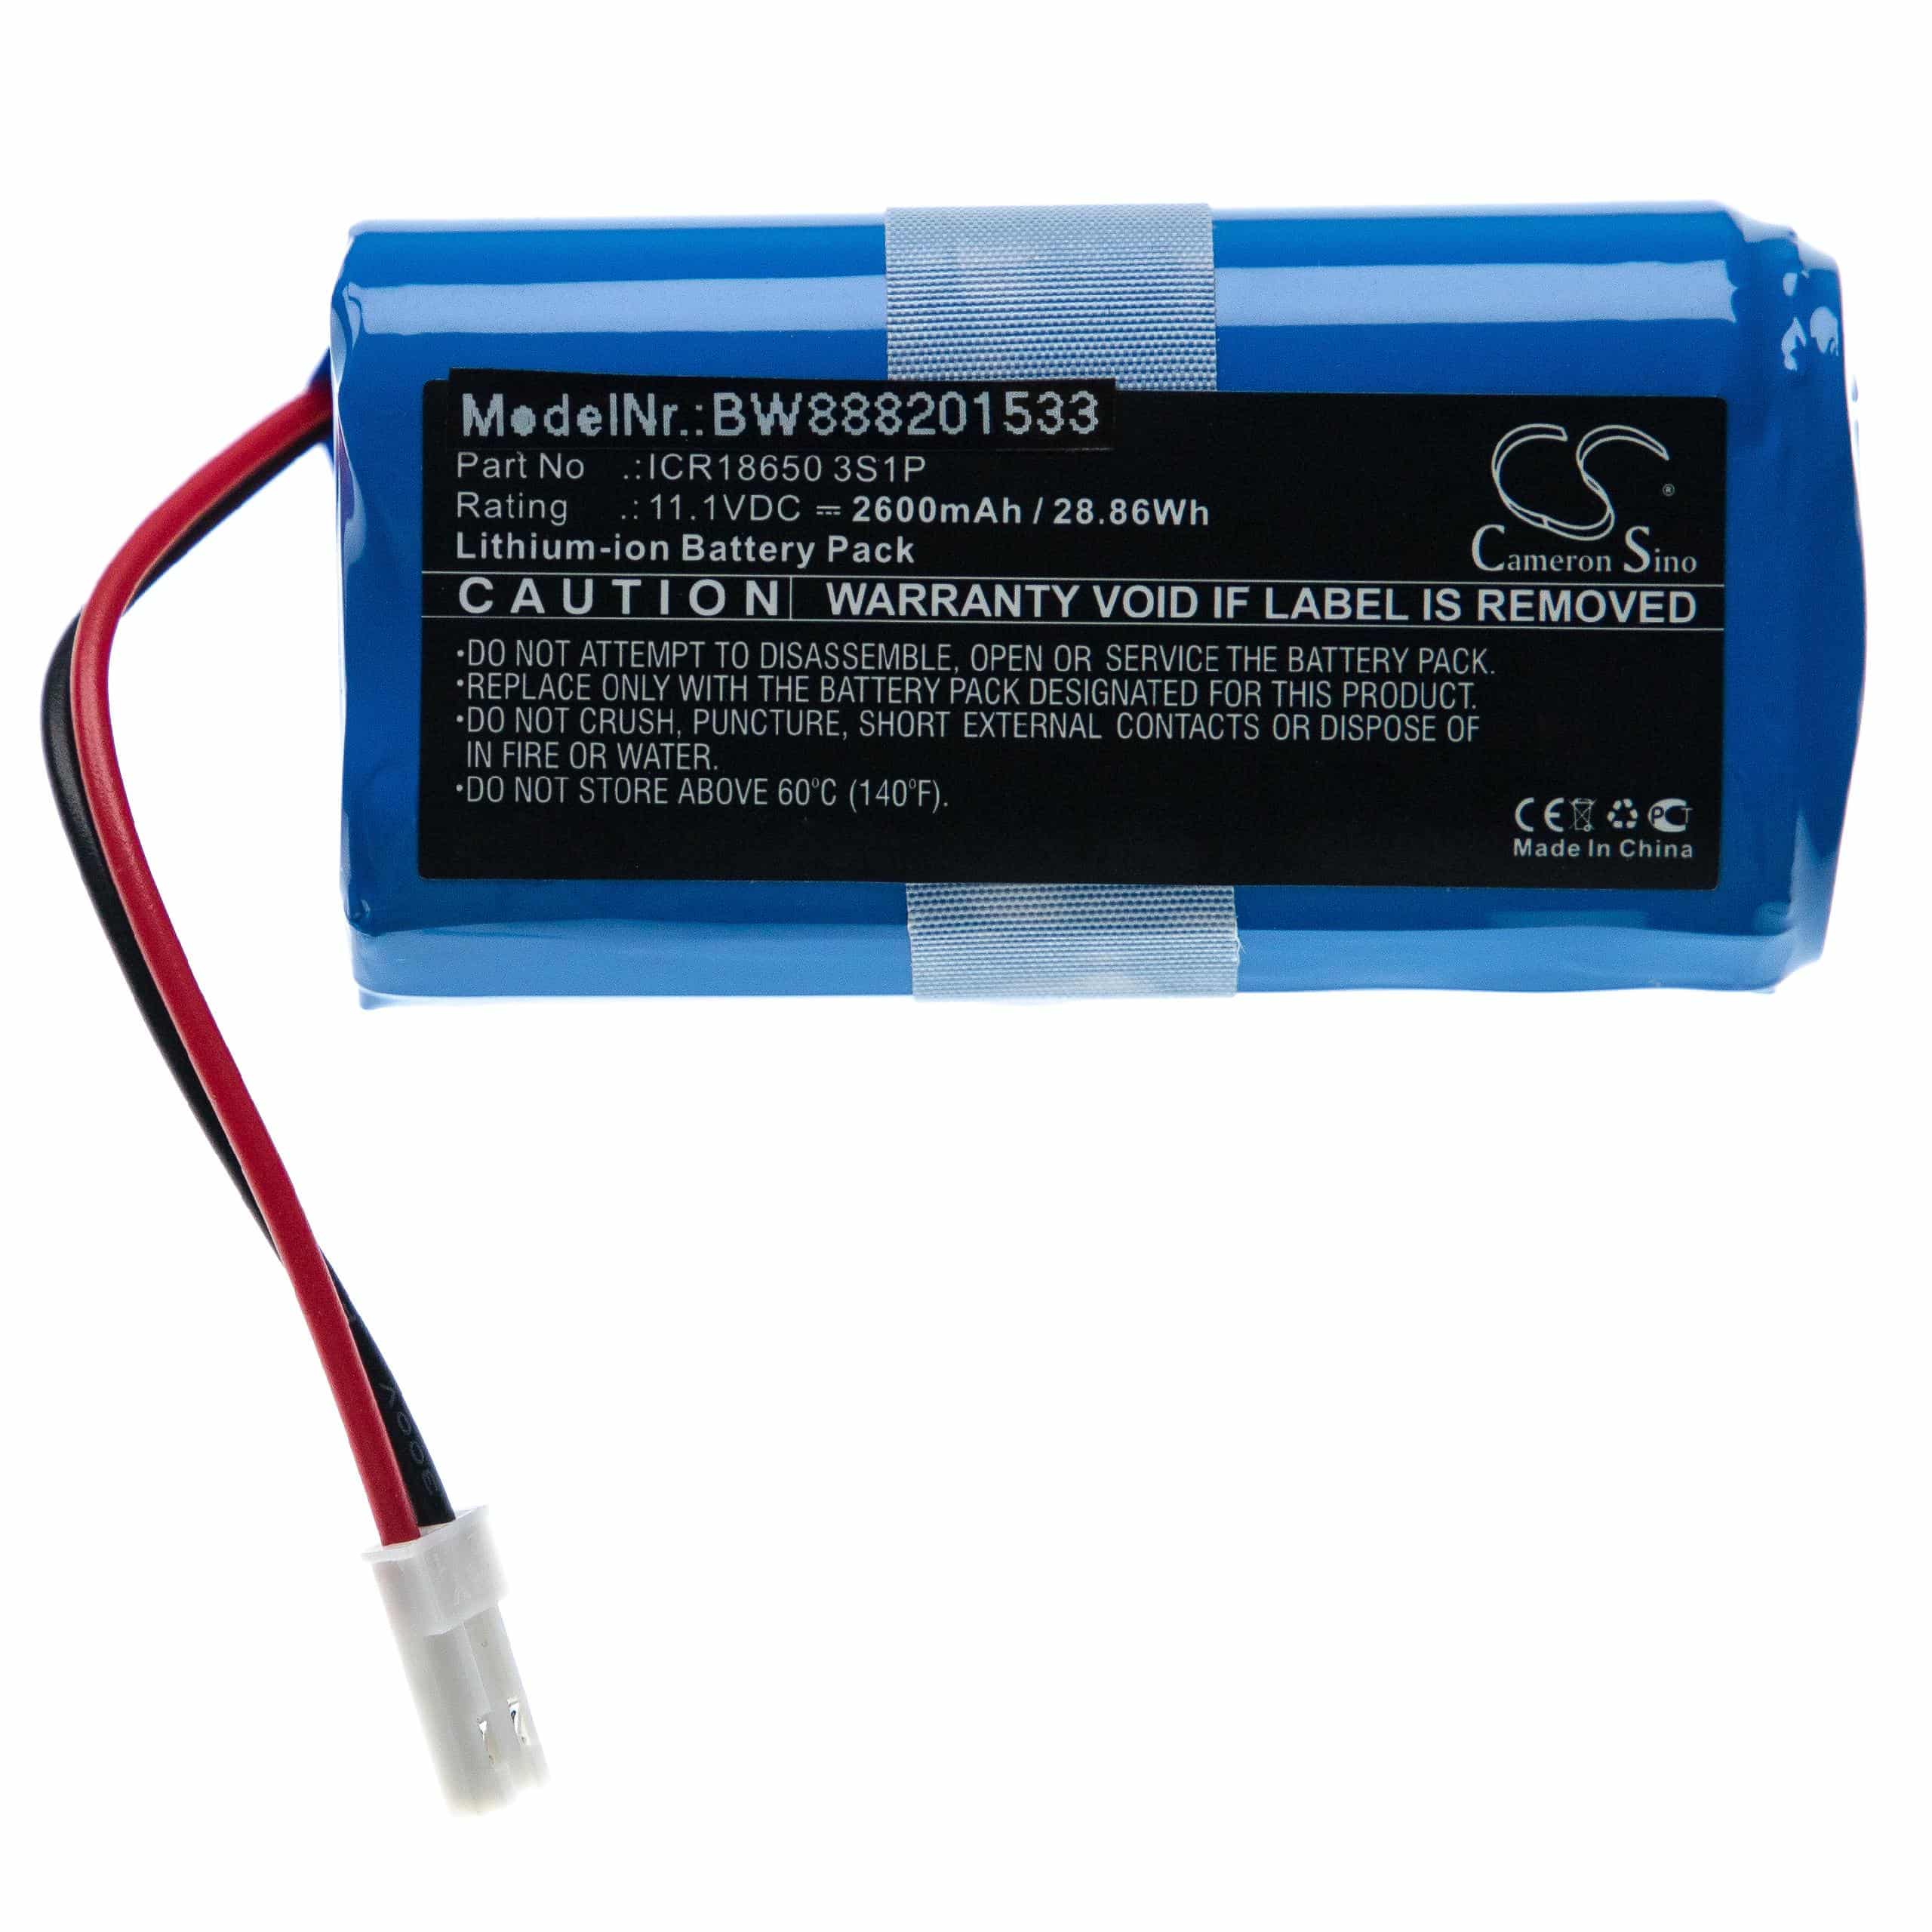 Batterie remplace Ecovacs ICR18650 3S1P pour robot aspirateur - 2600mAh 11,1V Li-ion